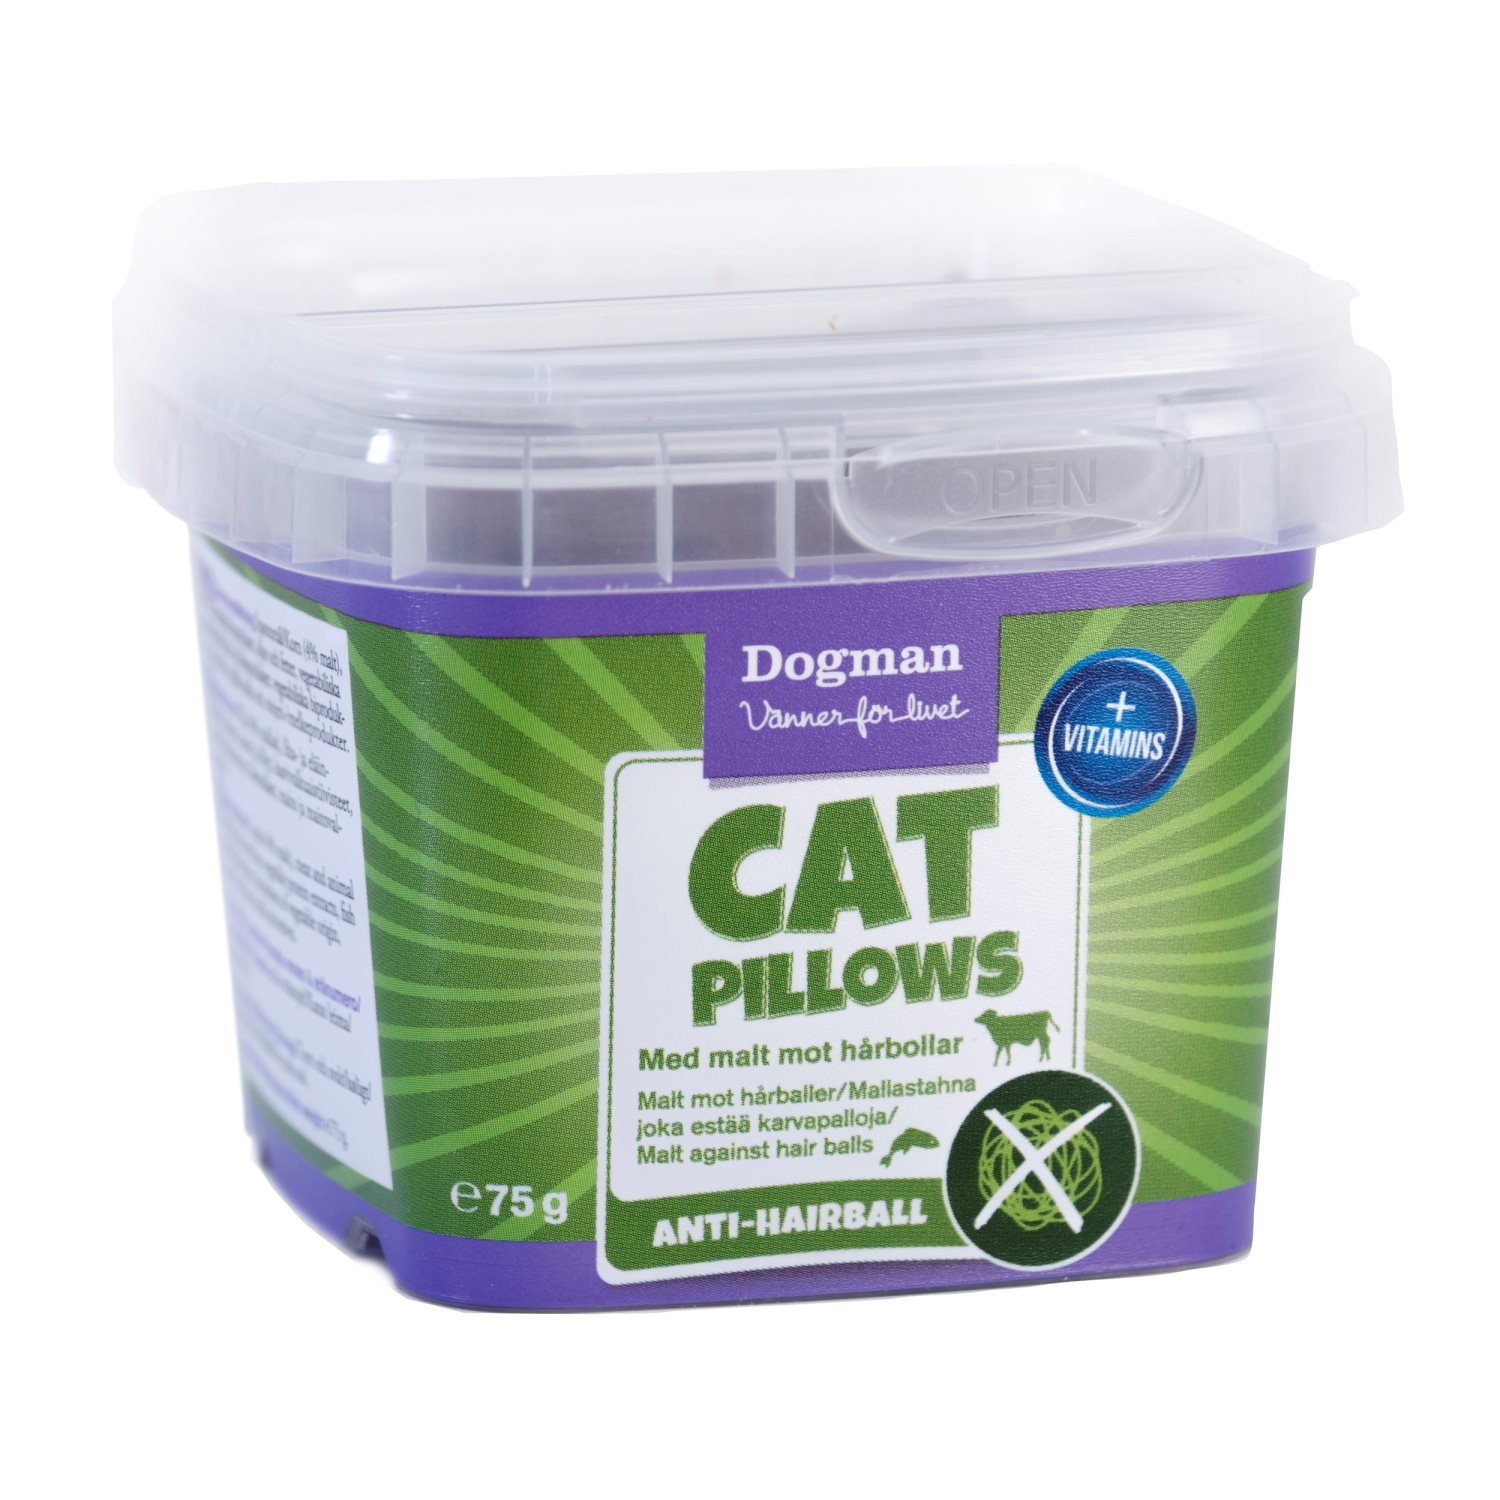 Se Cat Pillows, Anti hårbold hos Alttilhundogkat.dk